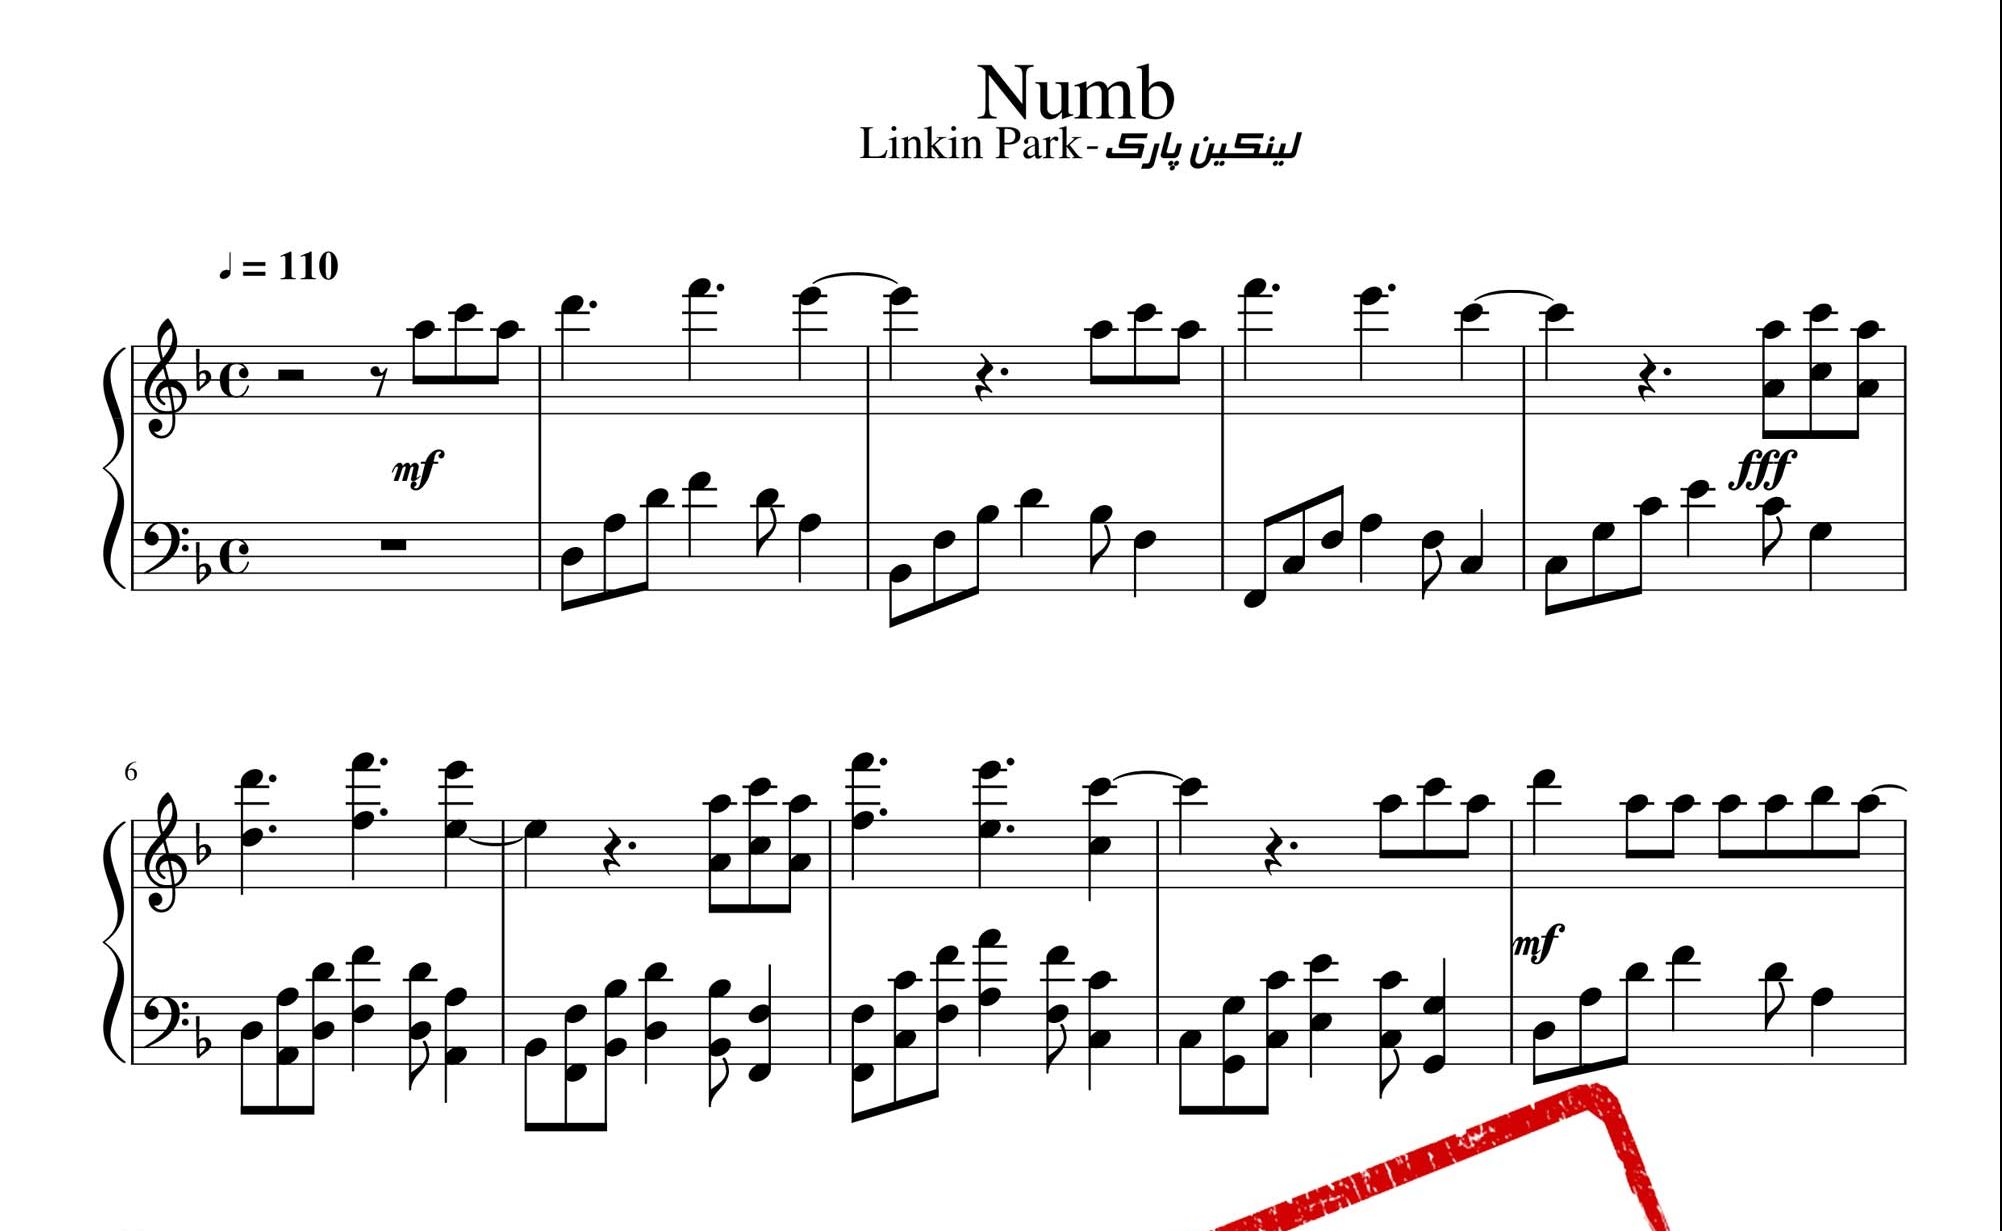 نت پیانوی آهنگ Numb گروه لینکین پارک